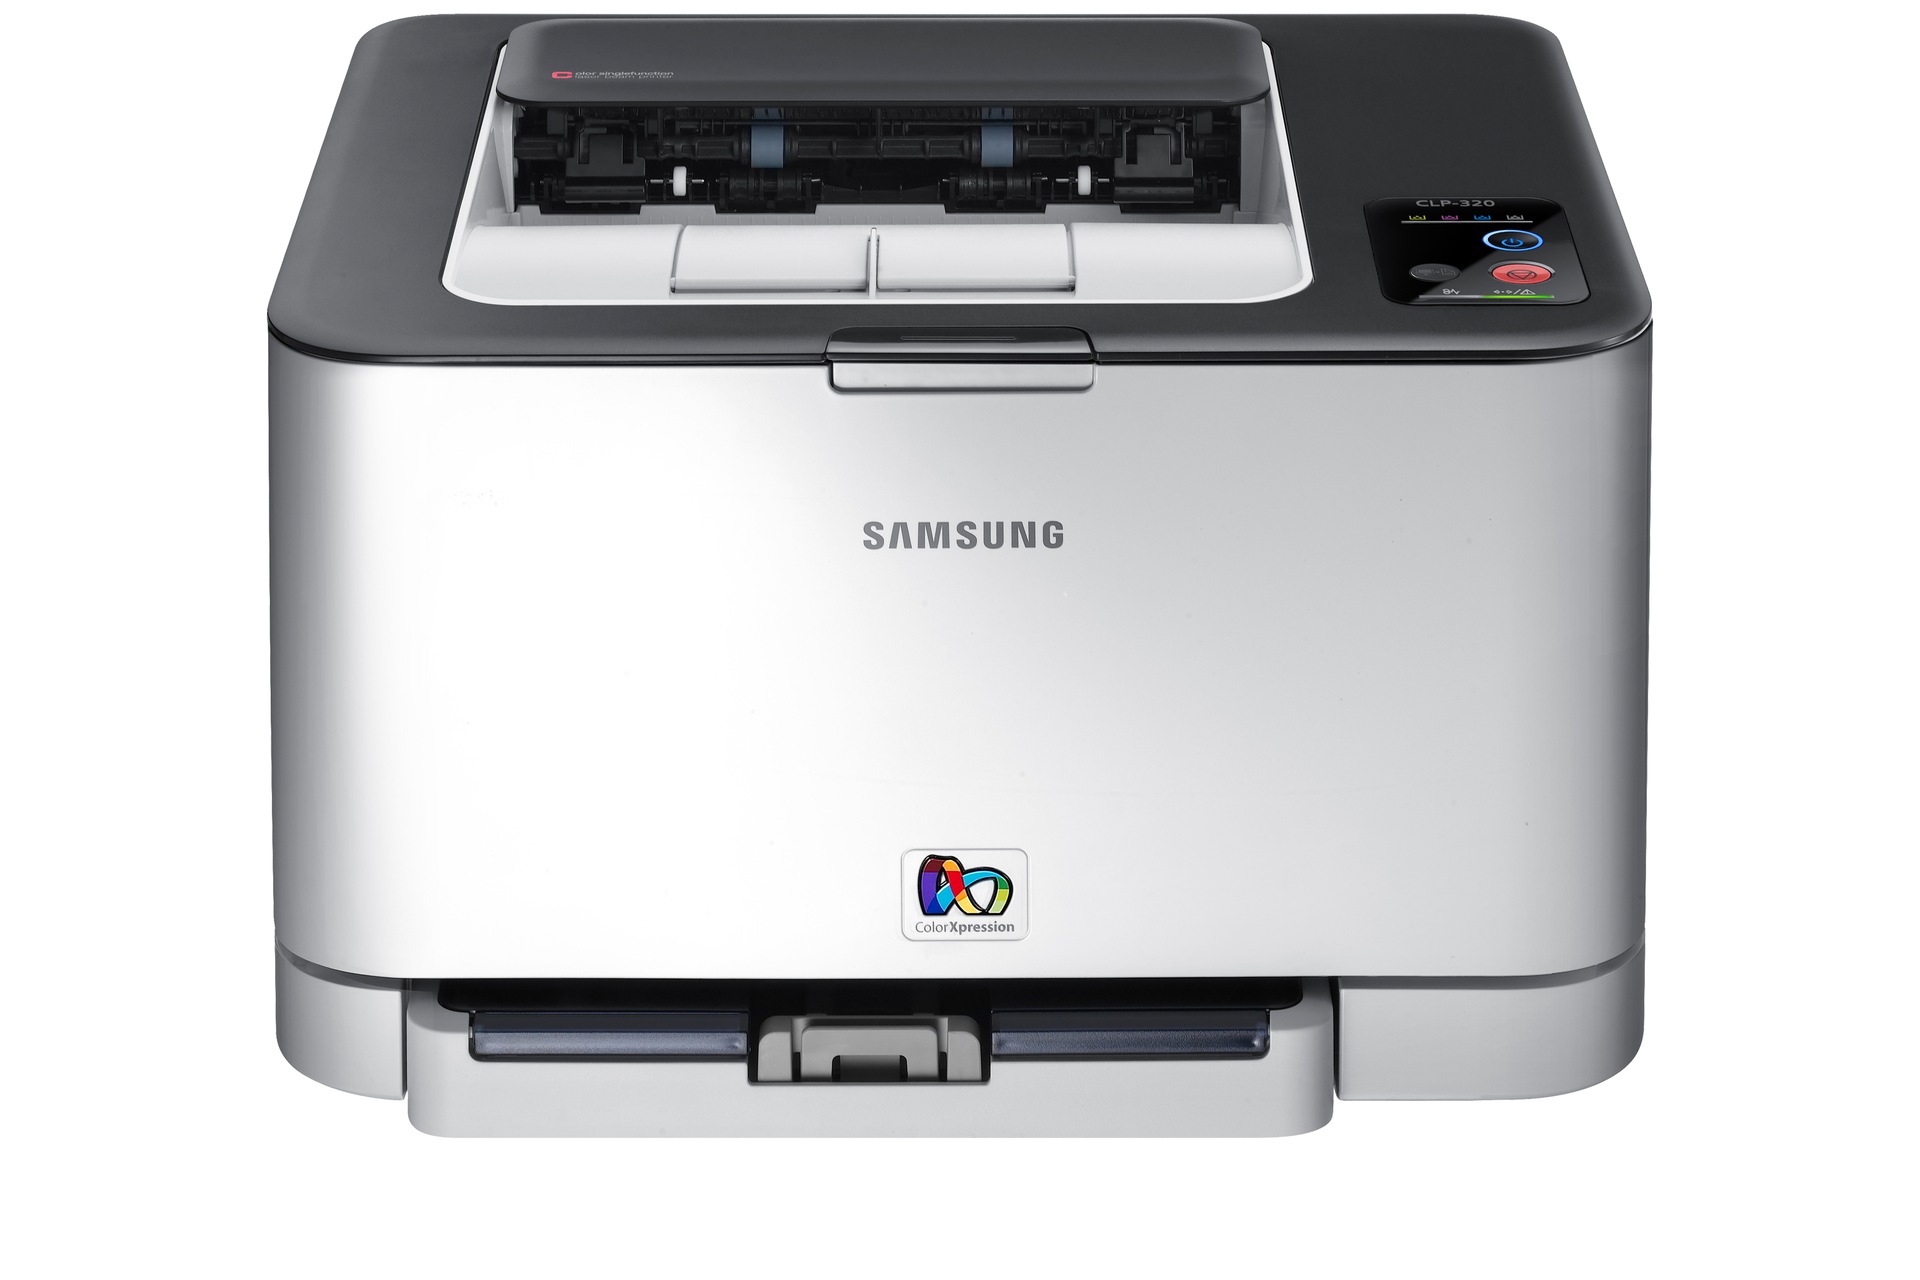 Samsung Color Laser Printer   on Clp 320 Color Laser Printer   Overzicht   Samsung